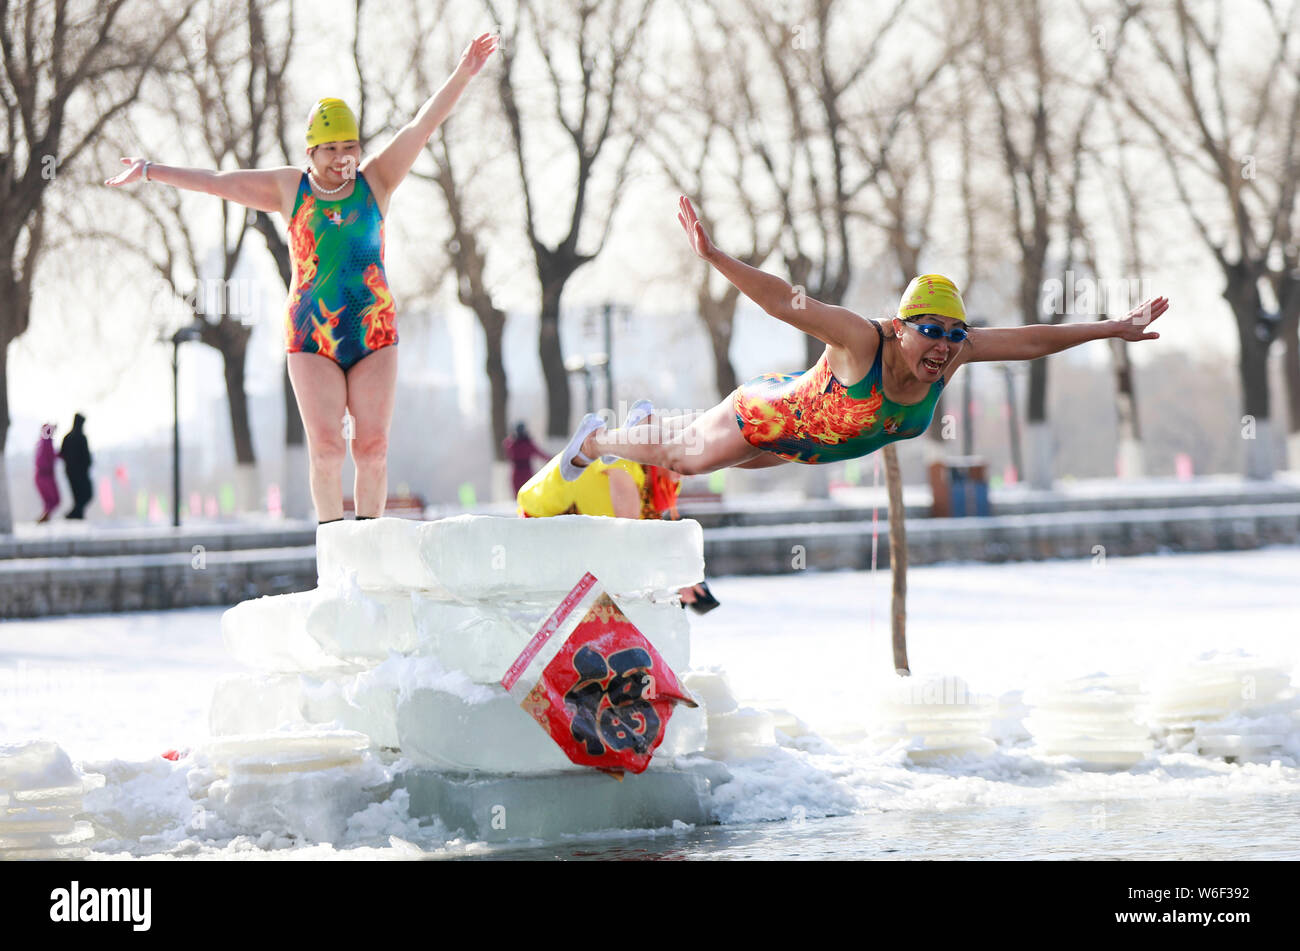 Un amateur de natation d'hiver chinois effectue en plongée drôle Beiling Park à Shenyang city, Liaoning Province du nord-est de la Chine, le 2 mars 2018. Banque D'Images